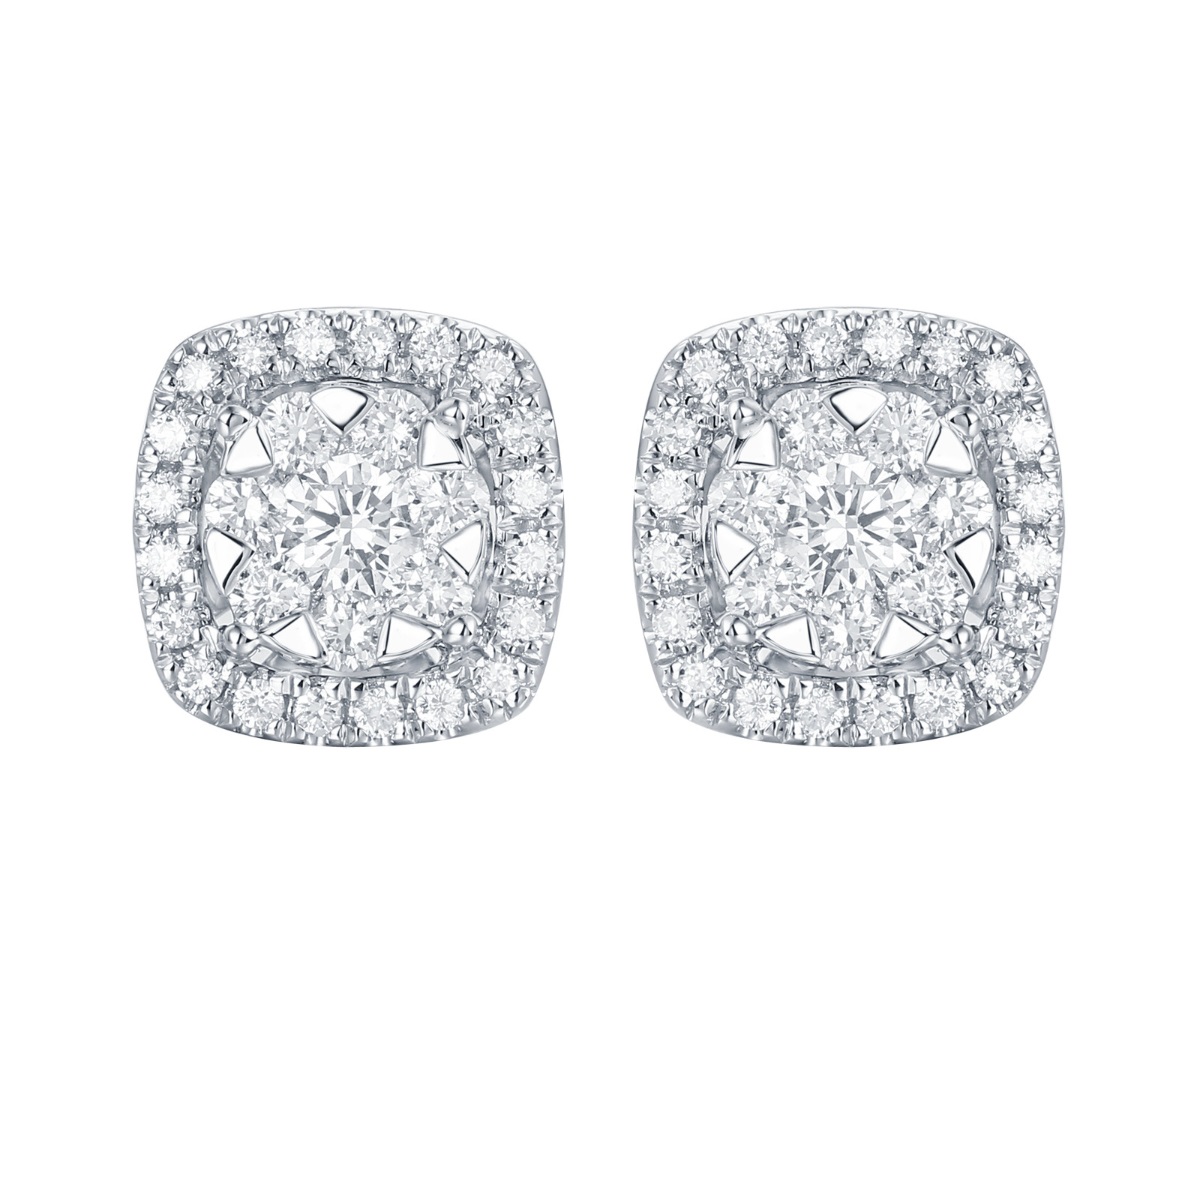 E36375WHT – 18K White Gold Diamond Earring, 0.53 TCW